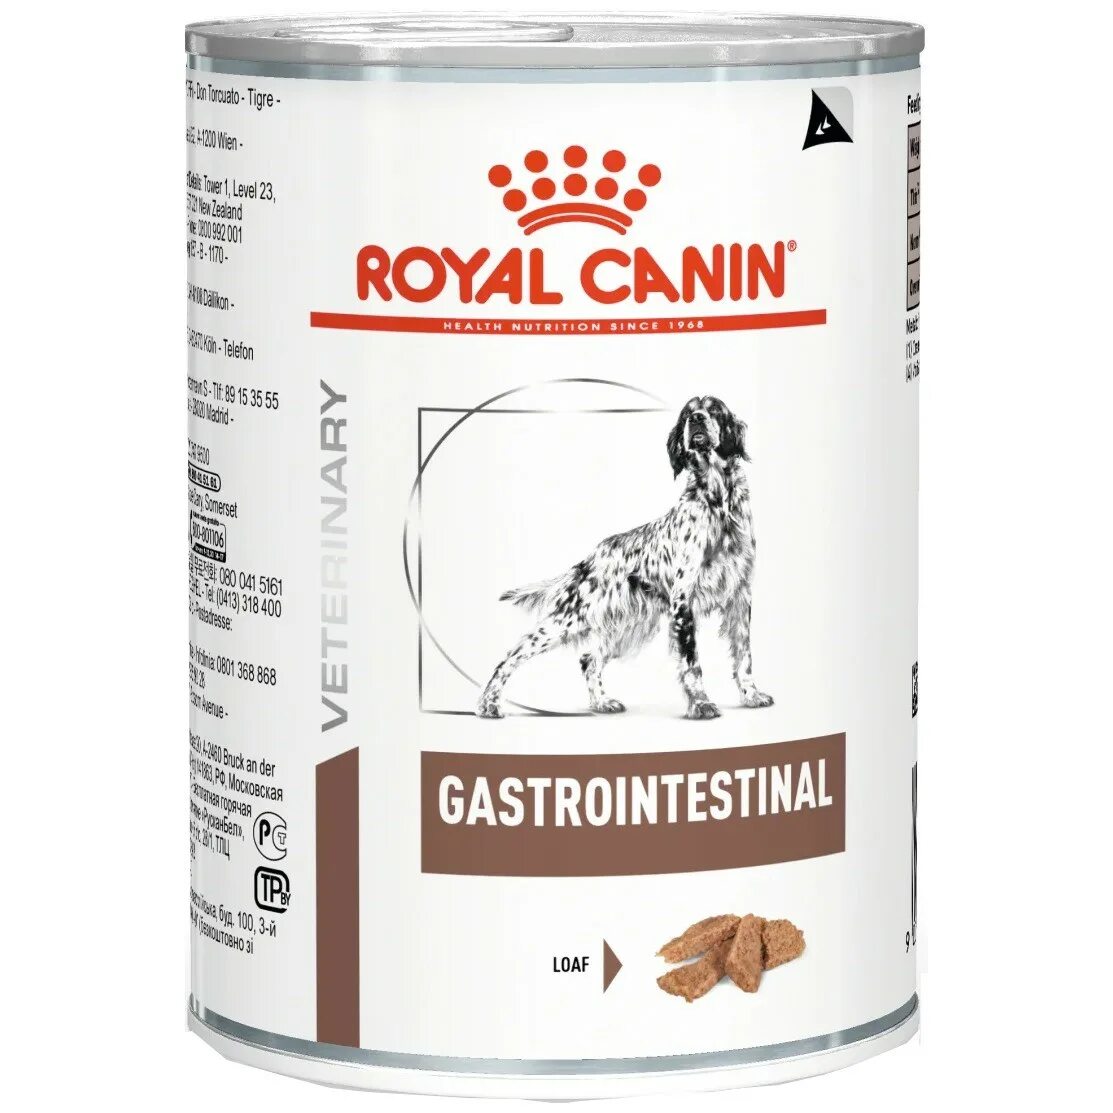 Royal Canin Gastrointestinal для собак. Royal Canin Gastrointestinal для собак Low fat. Royal Canin Gastro intestinal для собак. Royal Canin Gastro intestinal для собак 400g. Гастроинтестинал влажный купить для собак